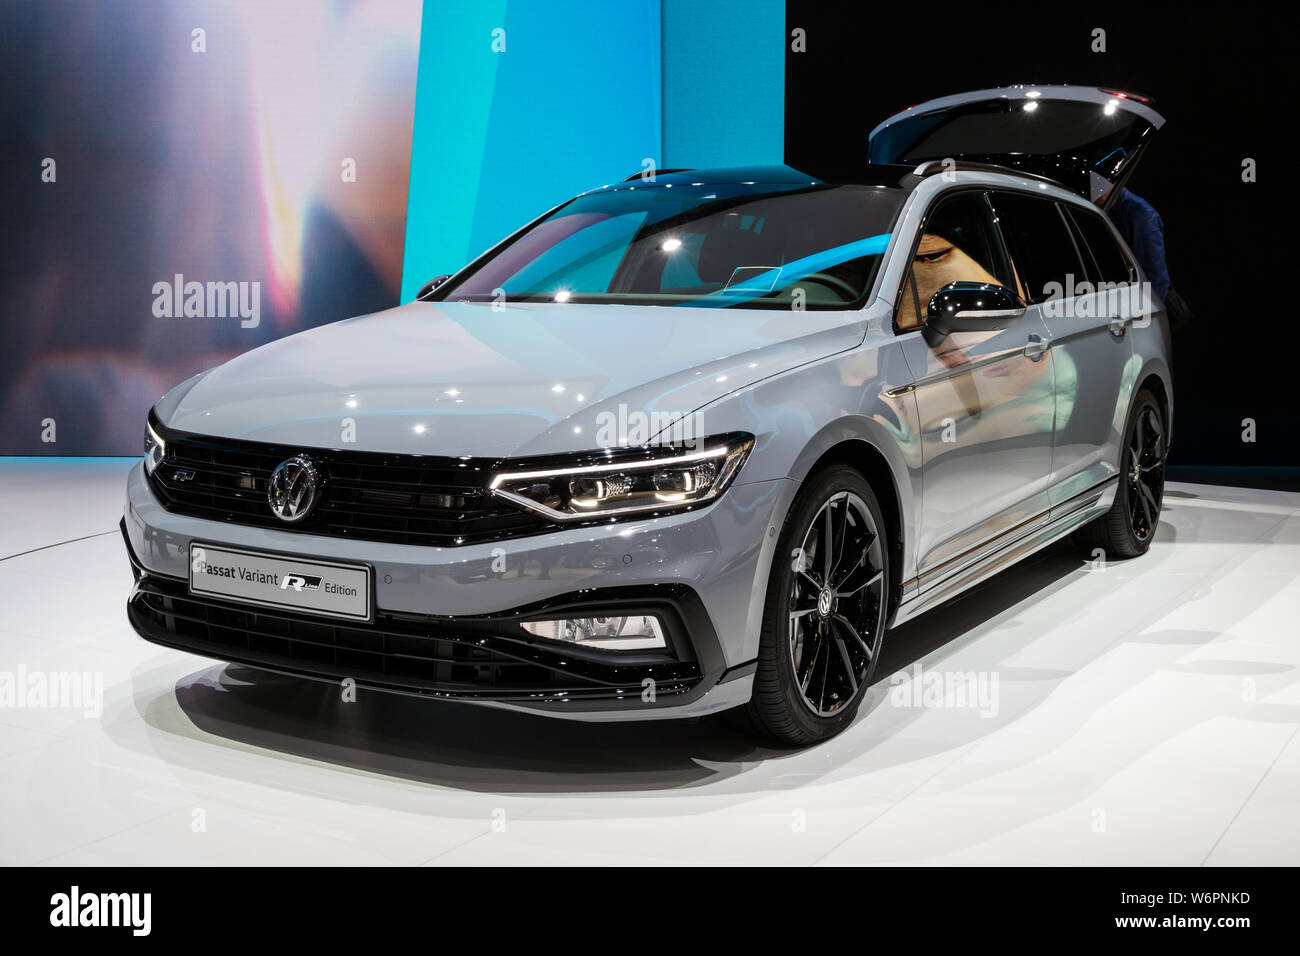 Vw Volkswagen Passat Stockfotos und -bilder Kaufen - Seite 3 - Alamy